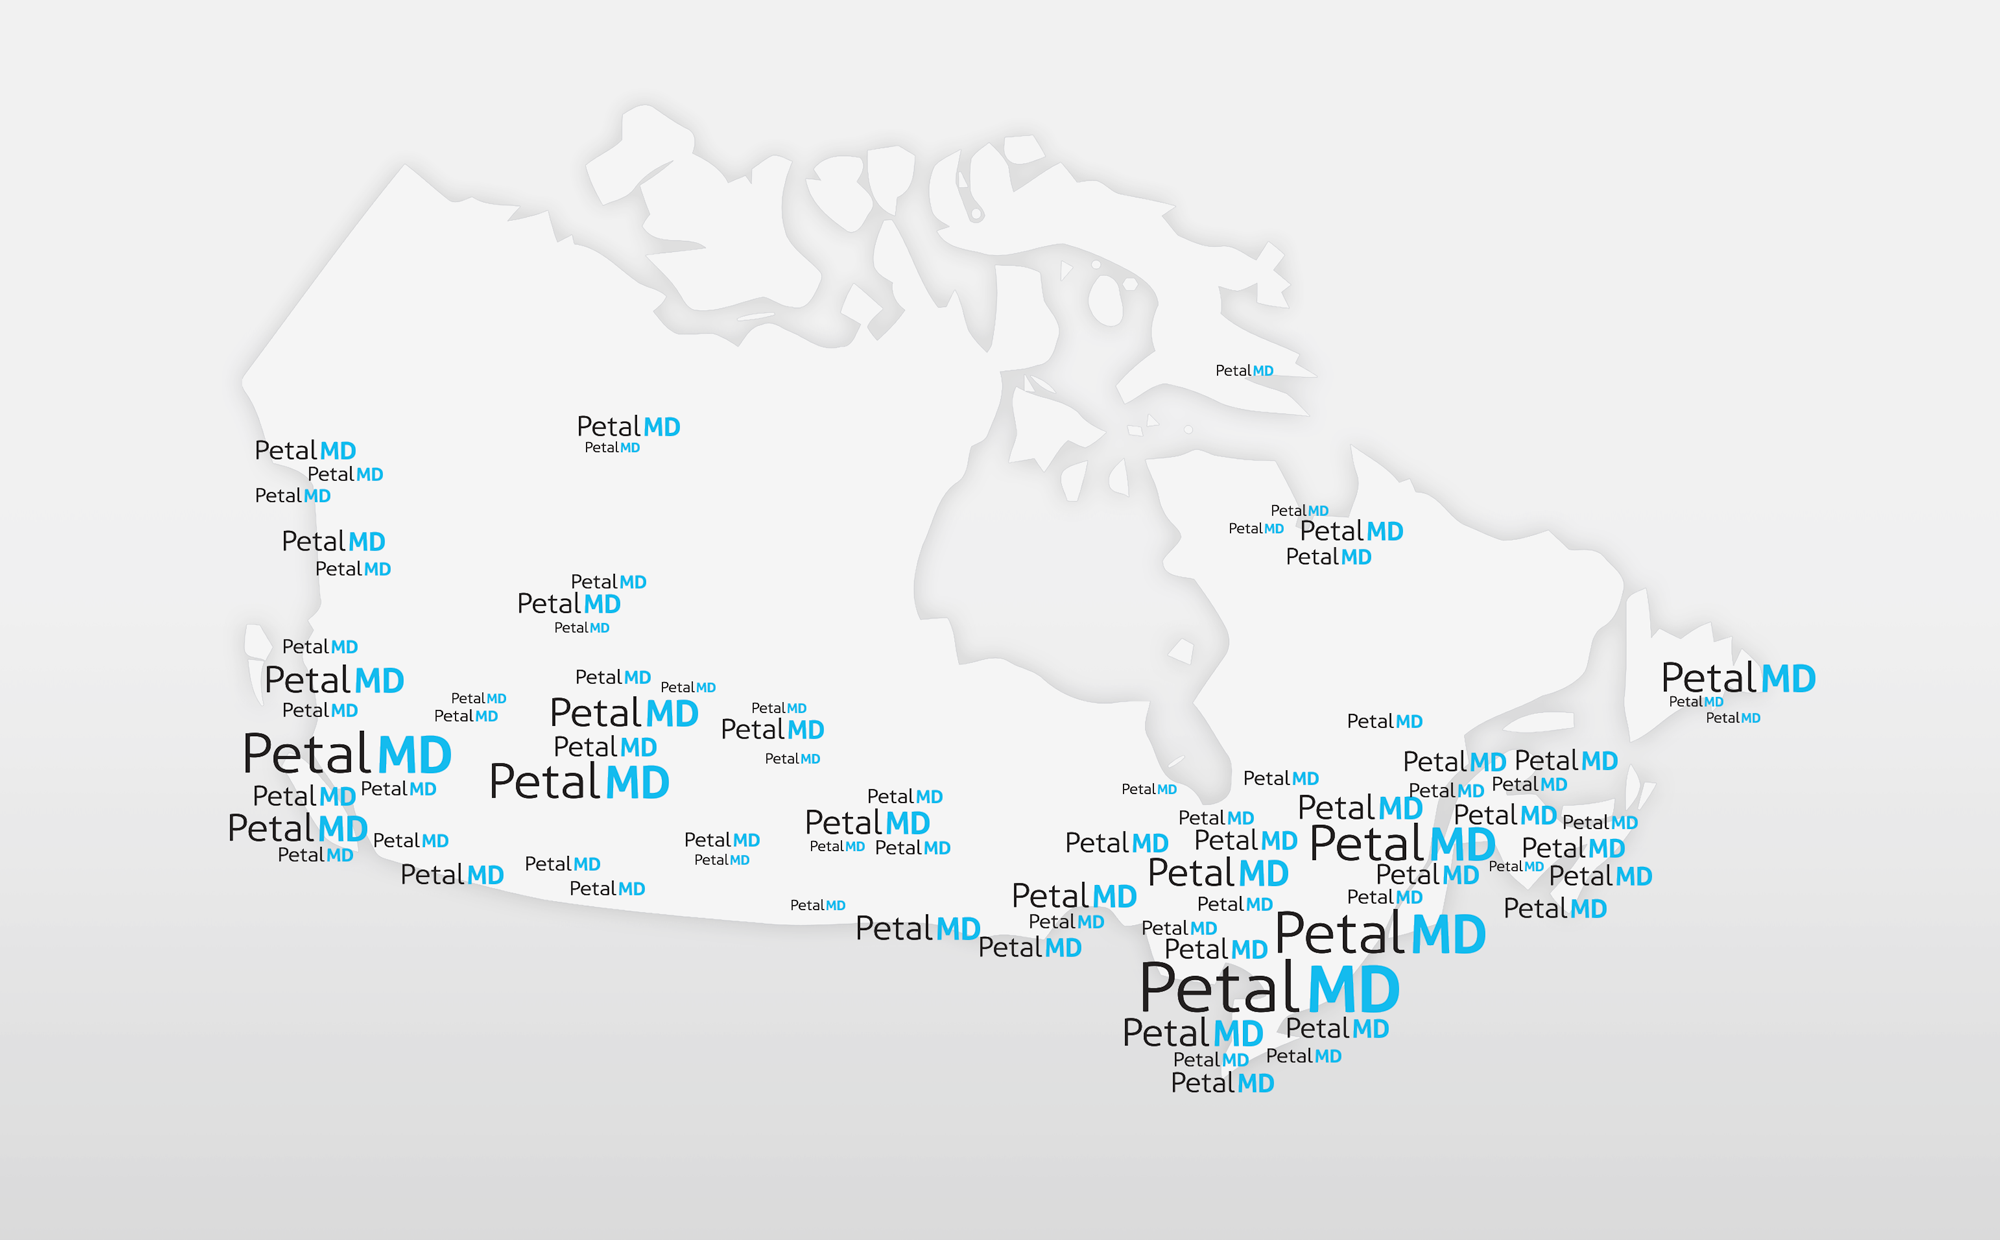 PetalMD confirme maintenant sa présence dans toutes les provinces et territoires du Canada